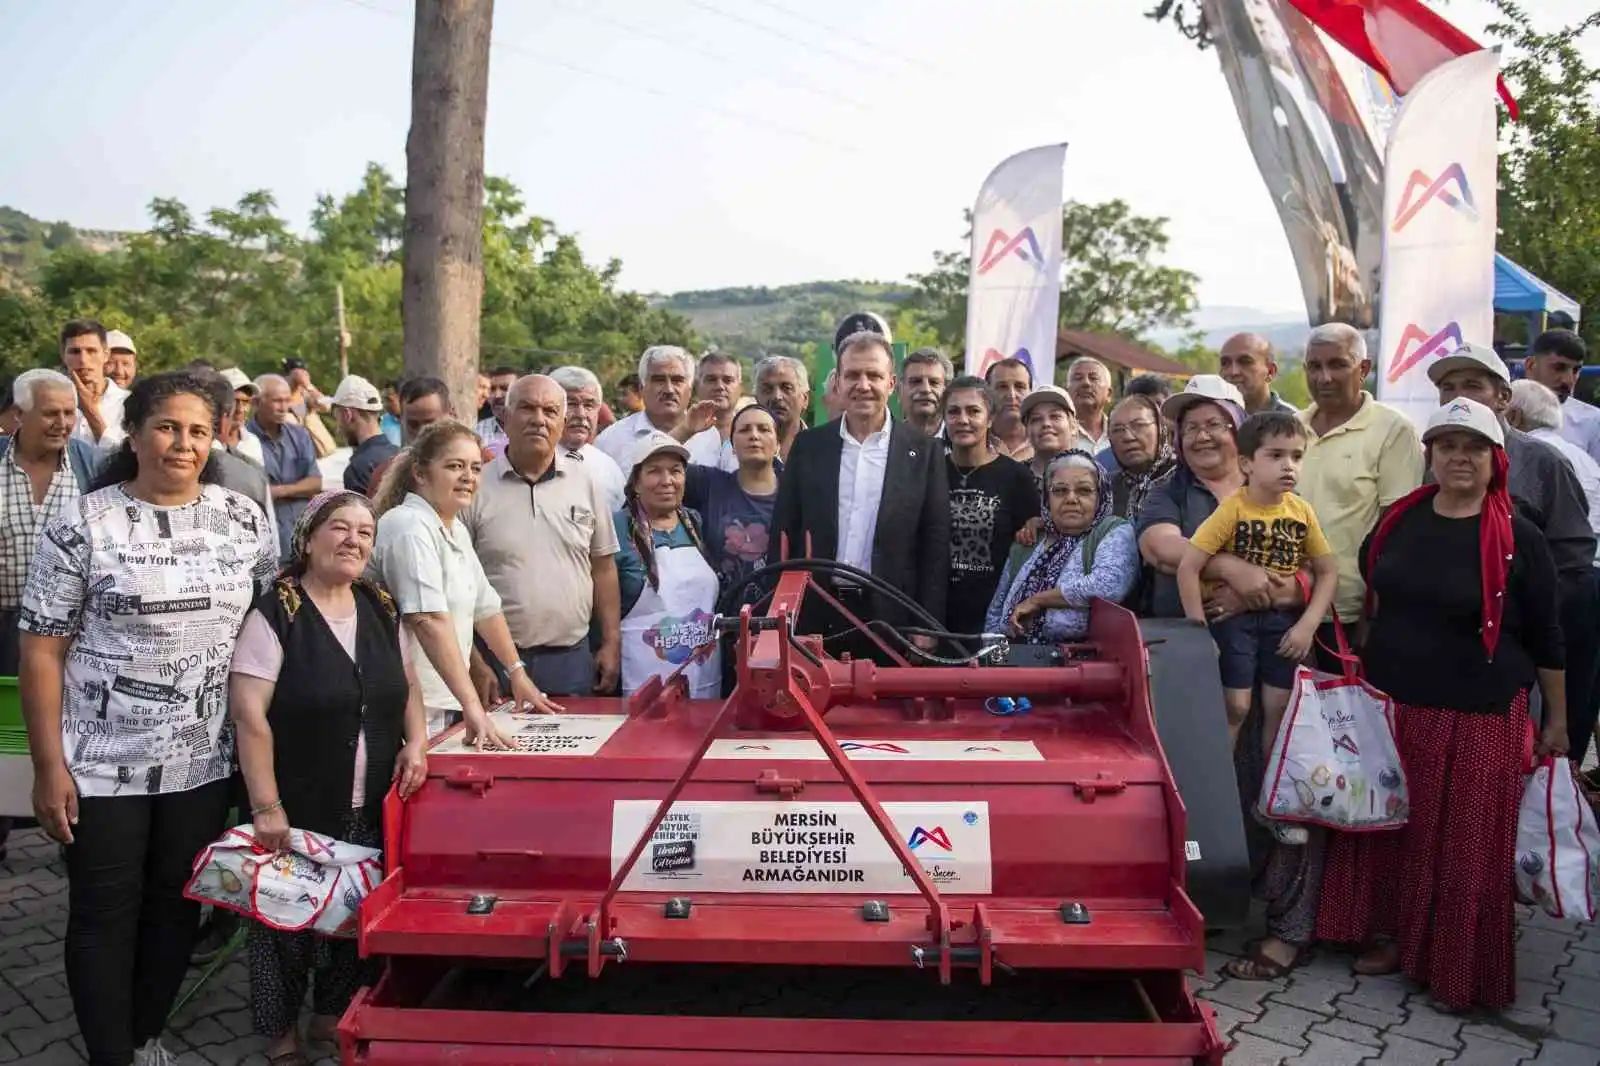 Mersin Büyükşehir Belediyesinden üreticiye destek sürüyor
